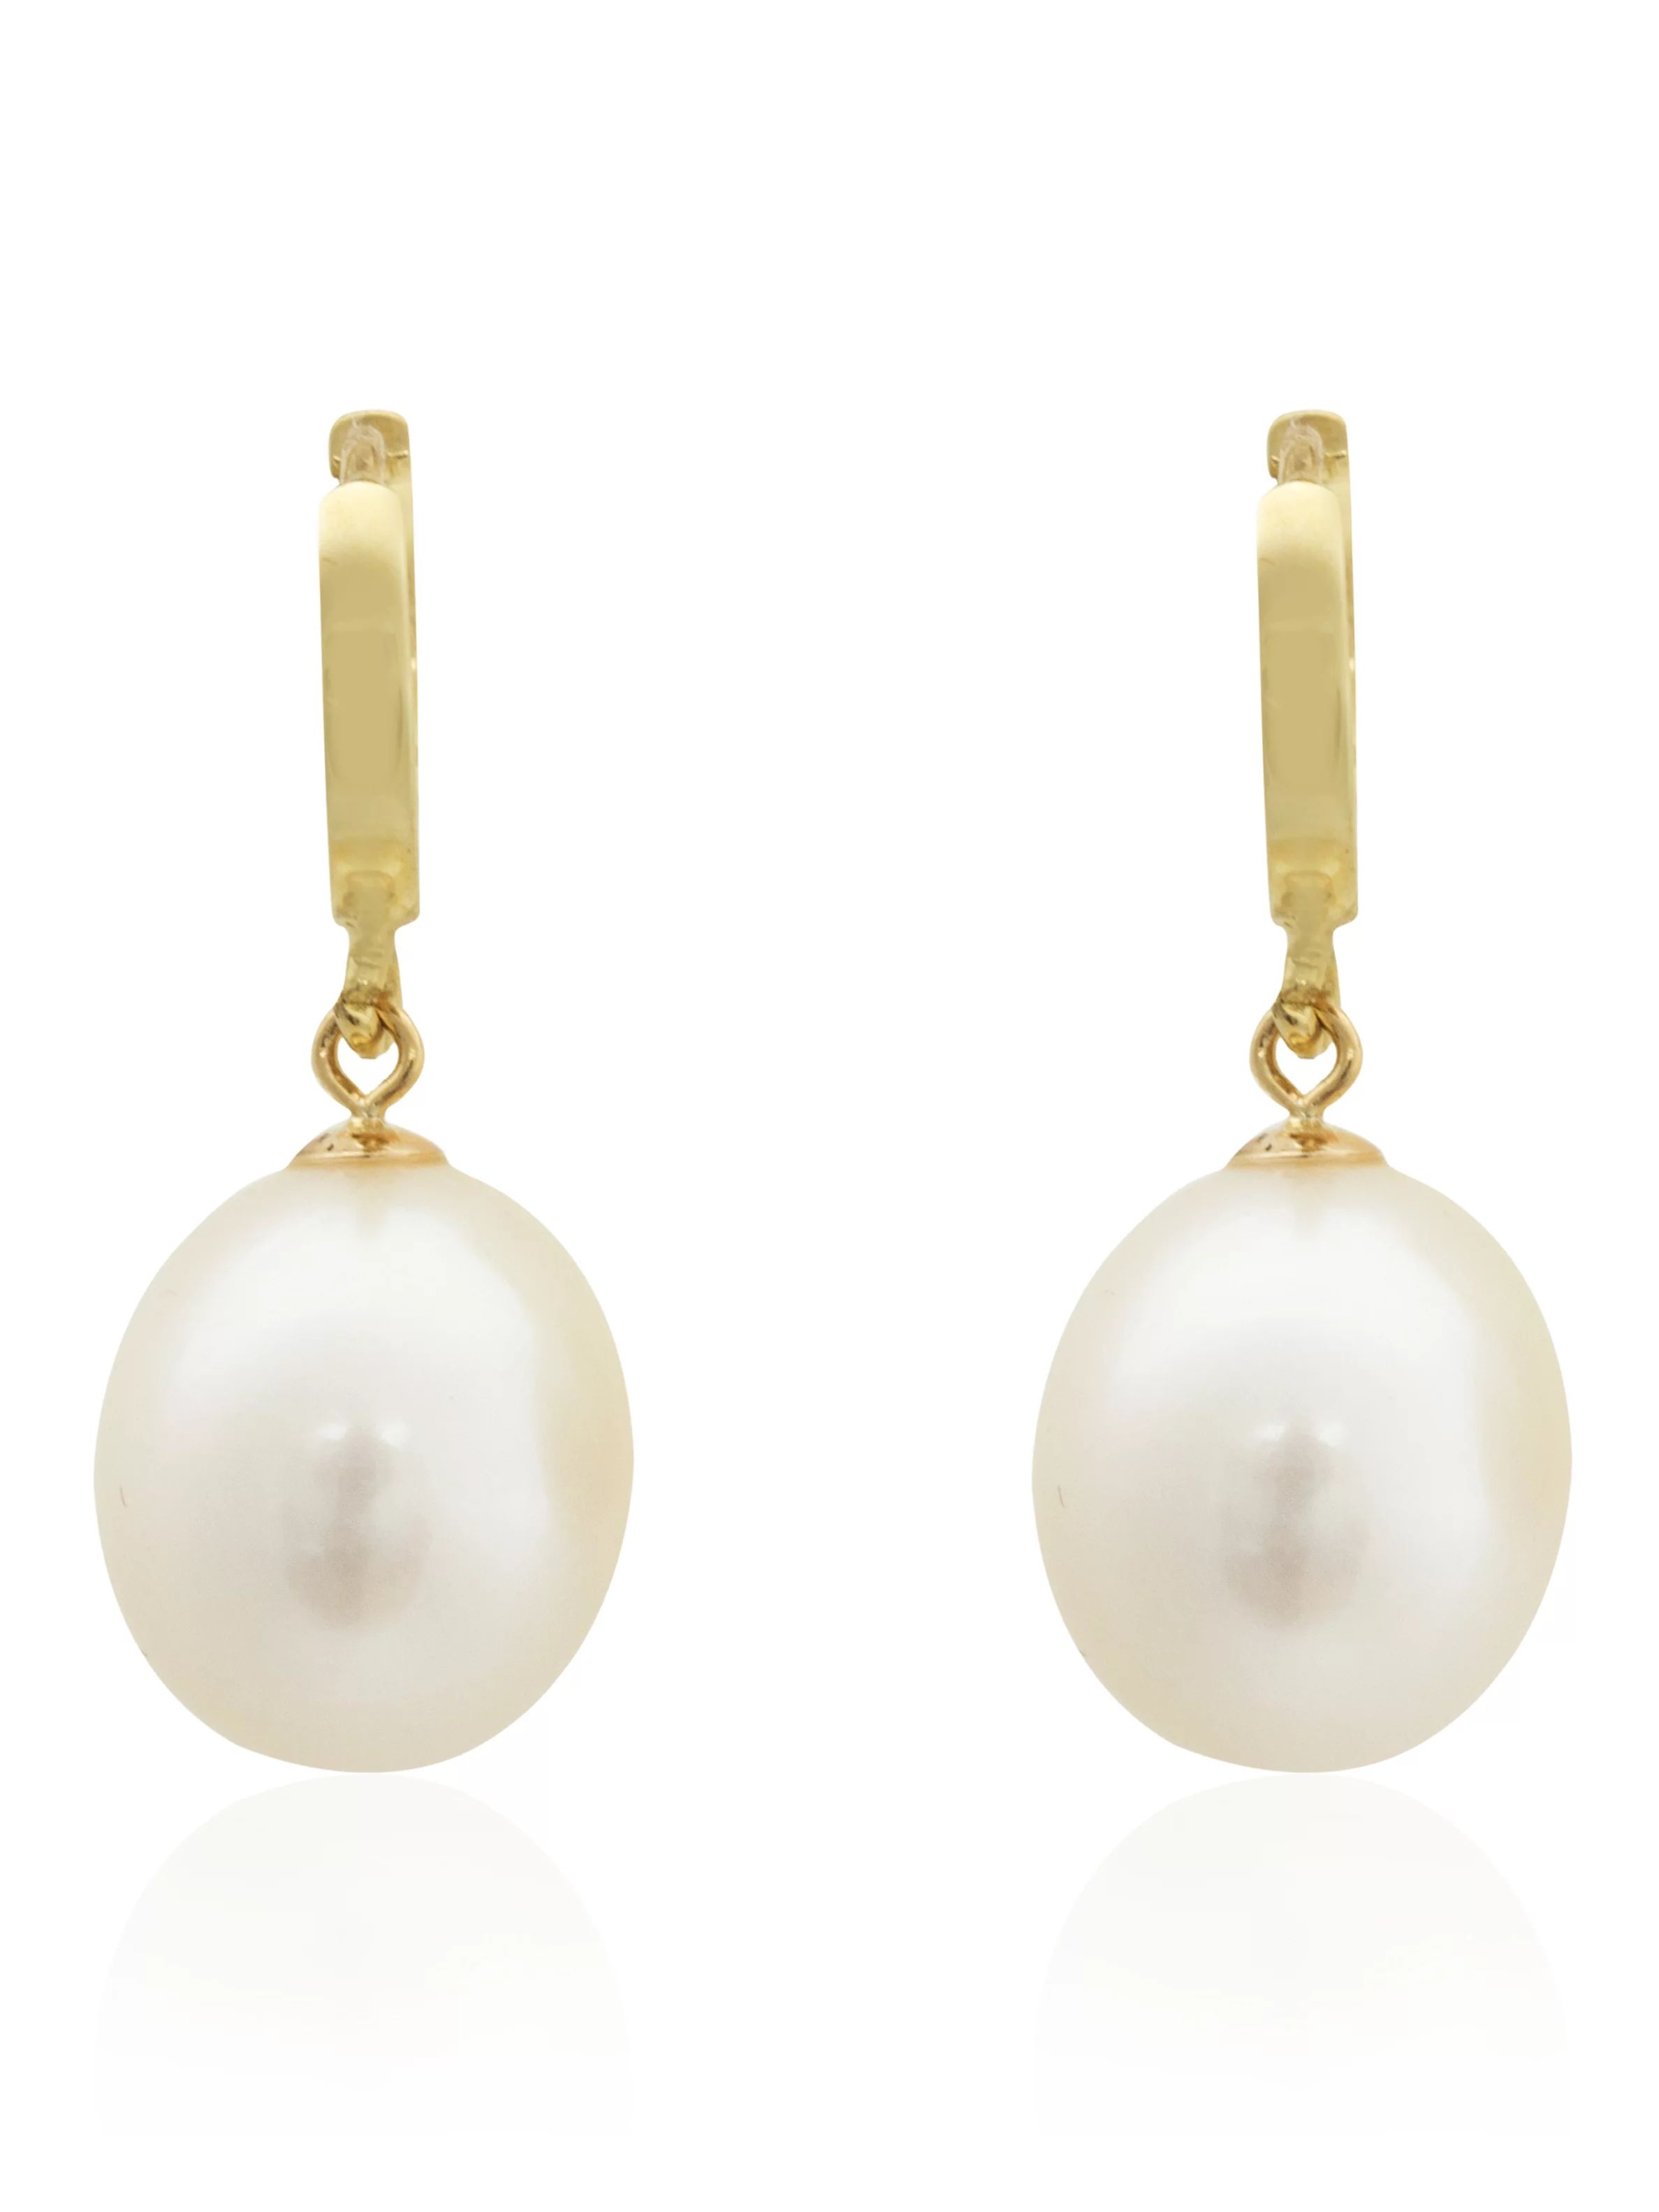 Pearlyta 14k Yellow Gold Teardrop Freshwater Pearl Hanging Earrings- Fine Jewelry Gift for Women ... | Walmart (US)